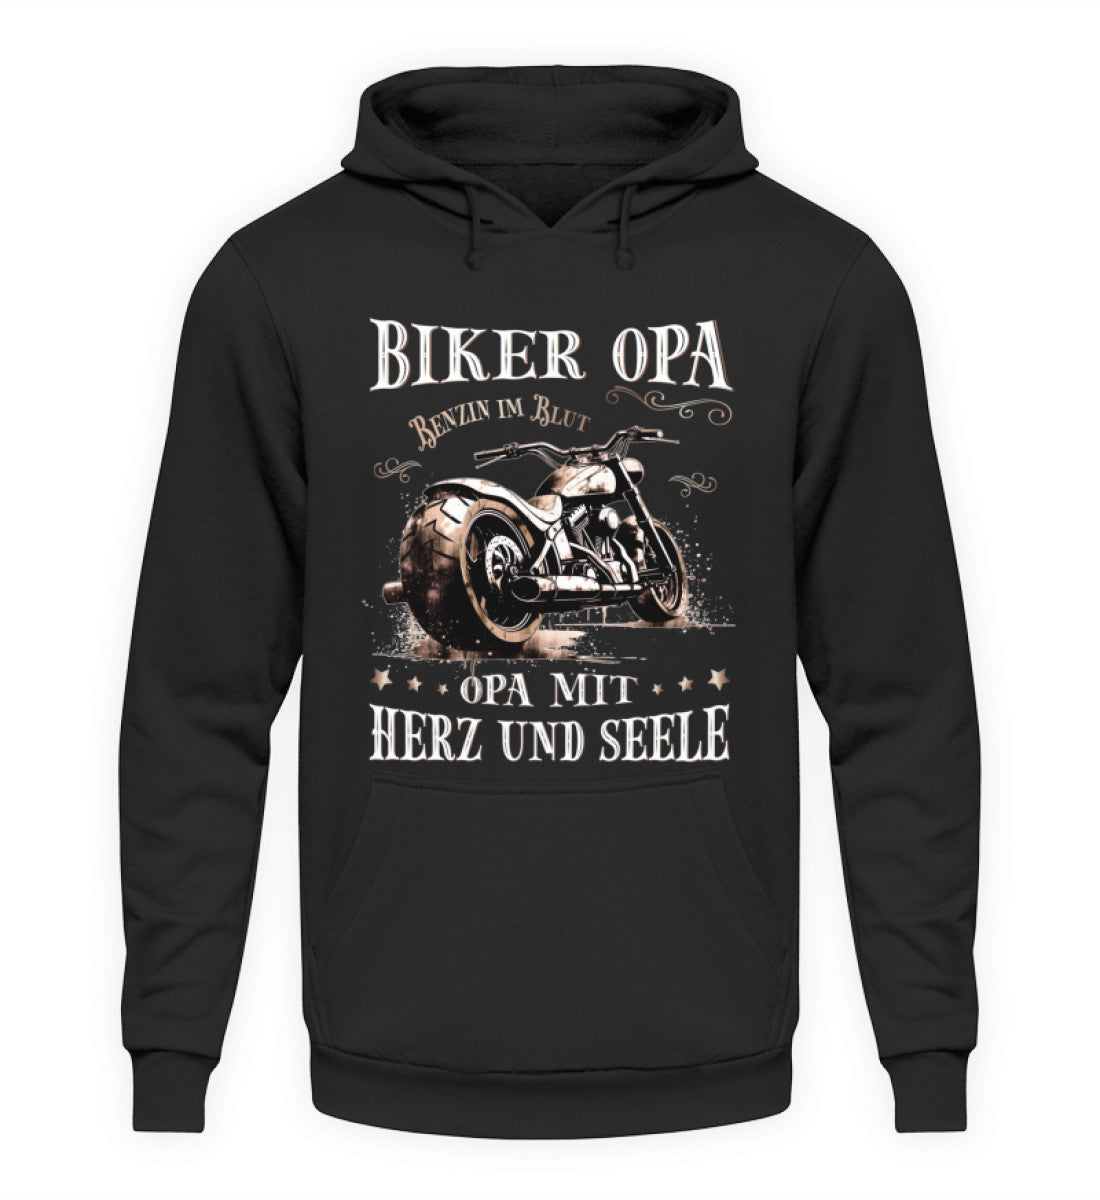 Ein Biker Hoodie für Motorradfahrer von Wingbikers mit dem Aufdruck, Biker Opa - Benzin im Blut - Opa mit Herz und Seele, in schwarz.